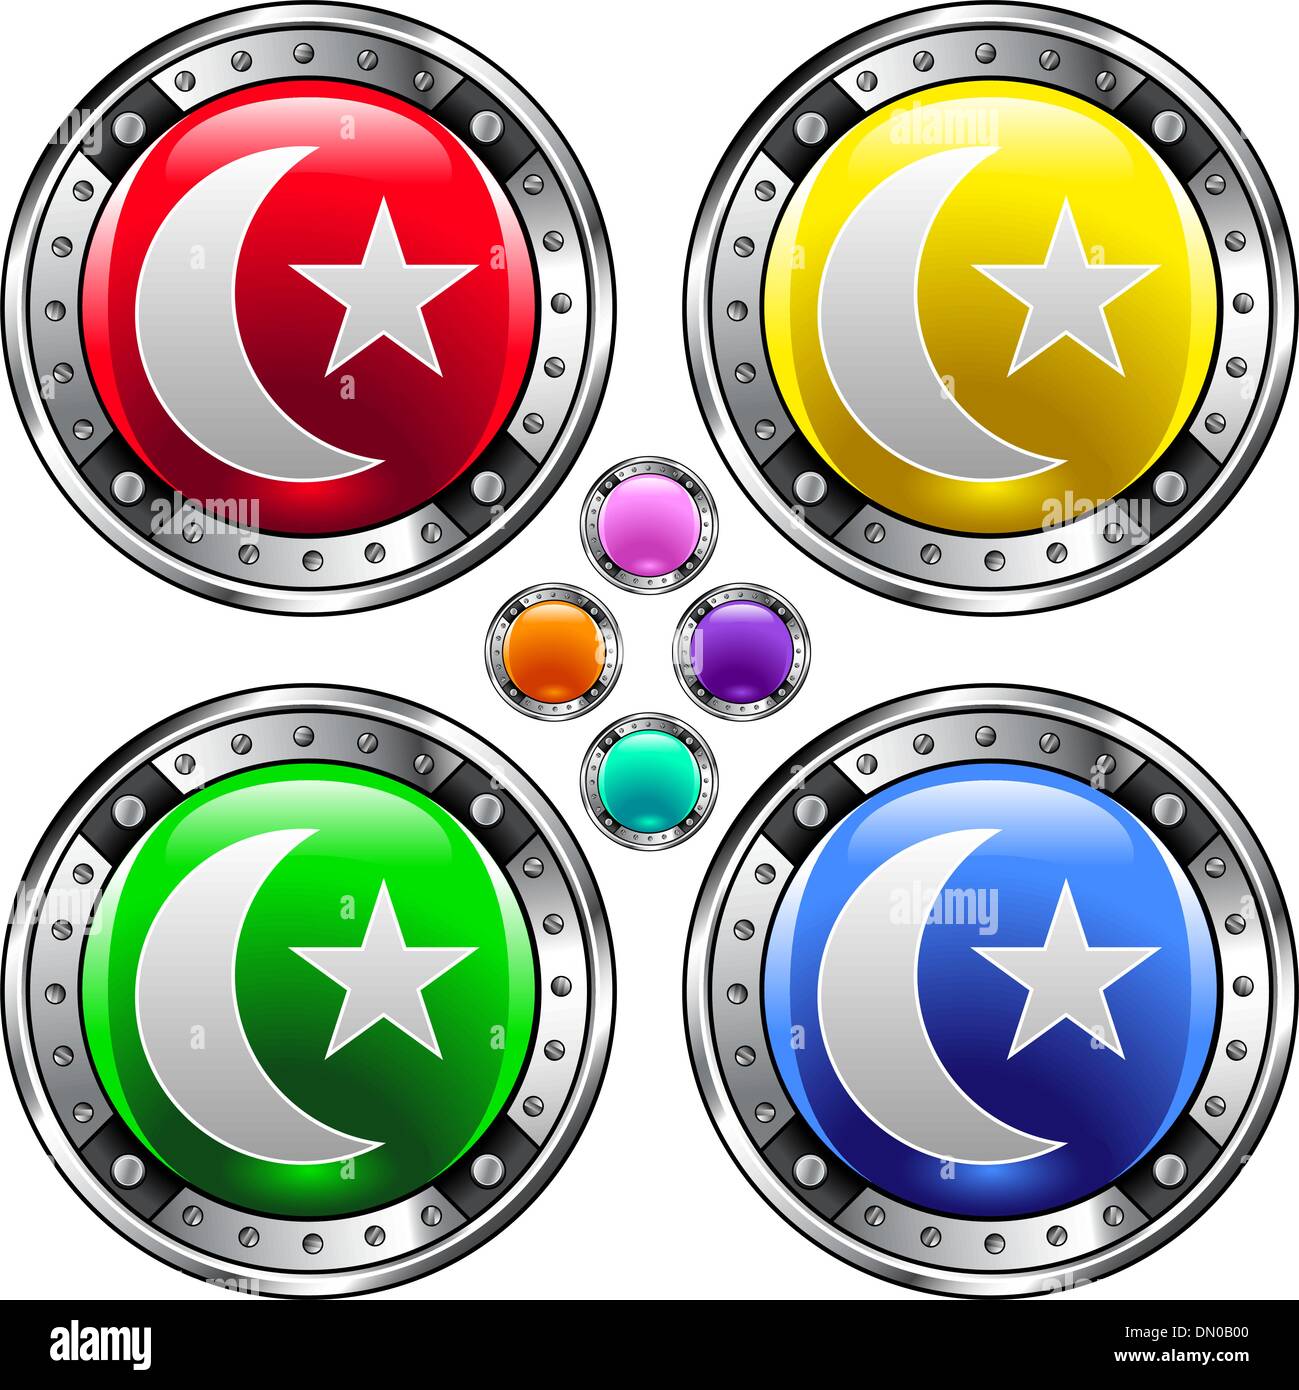 Islamische Stern und Halbmond bunten button Stock Vektor